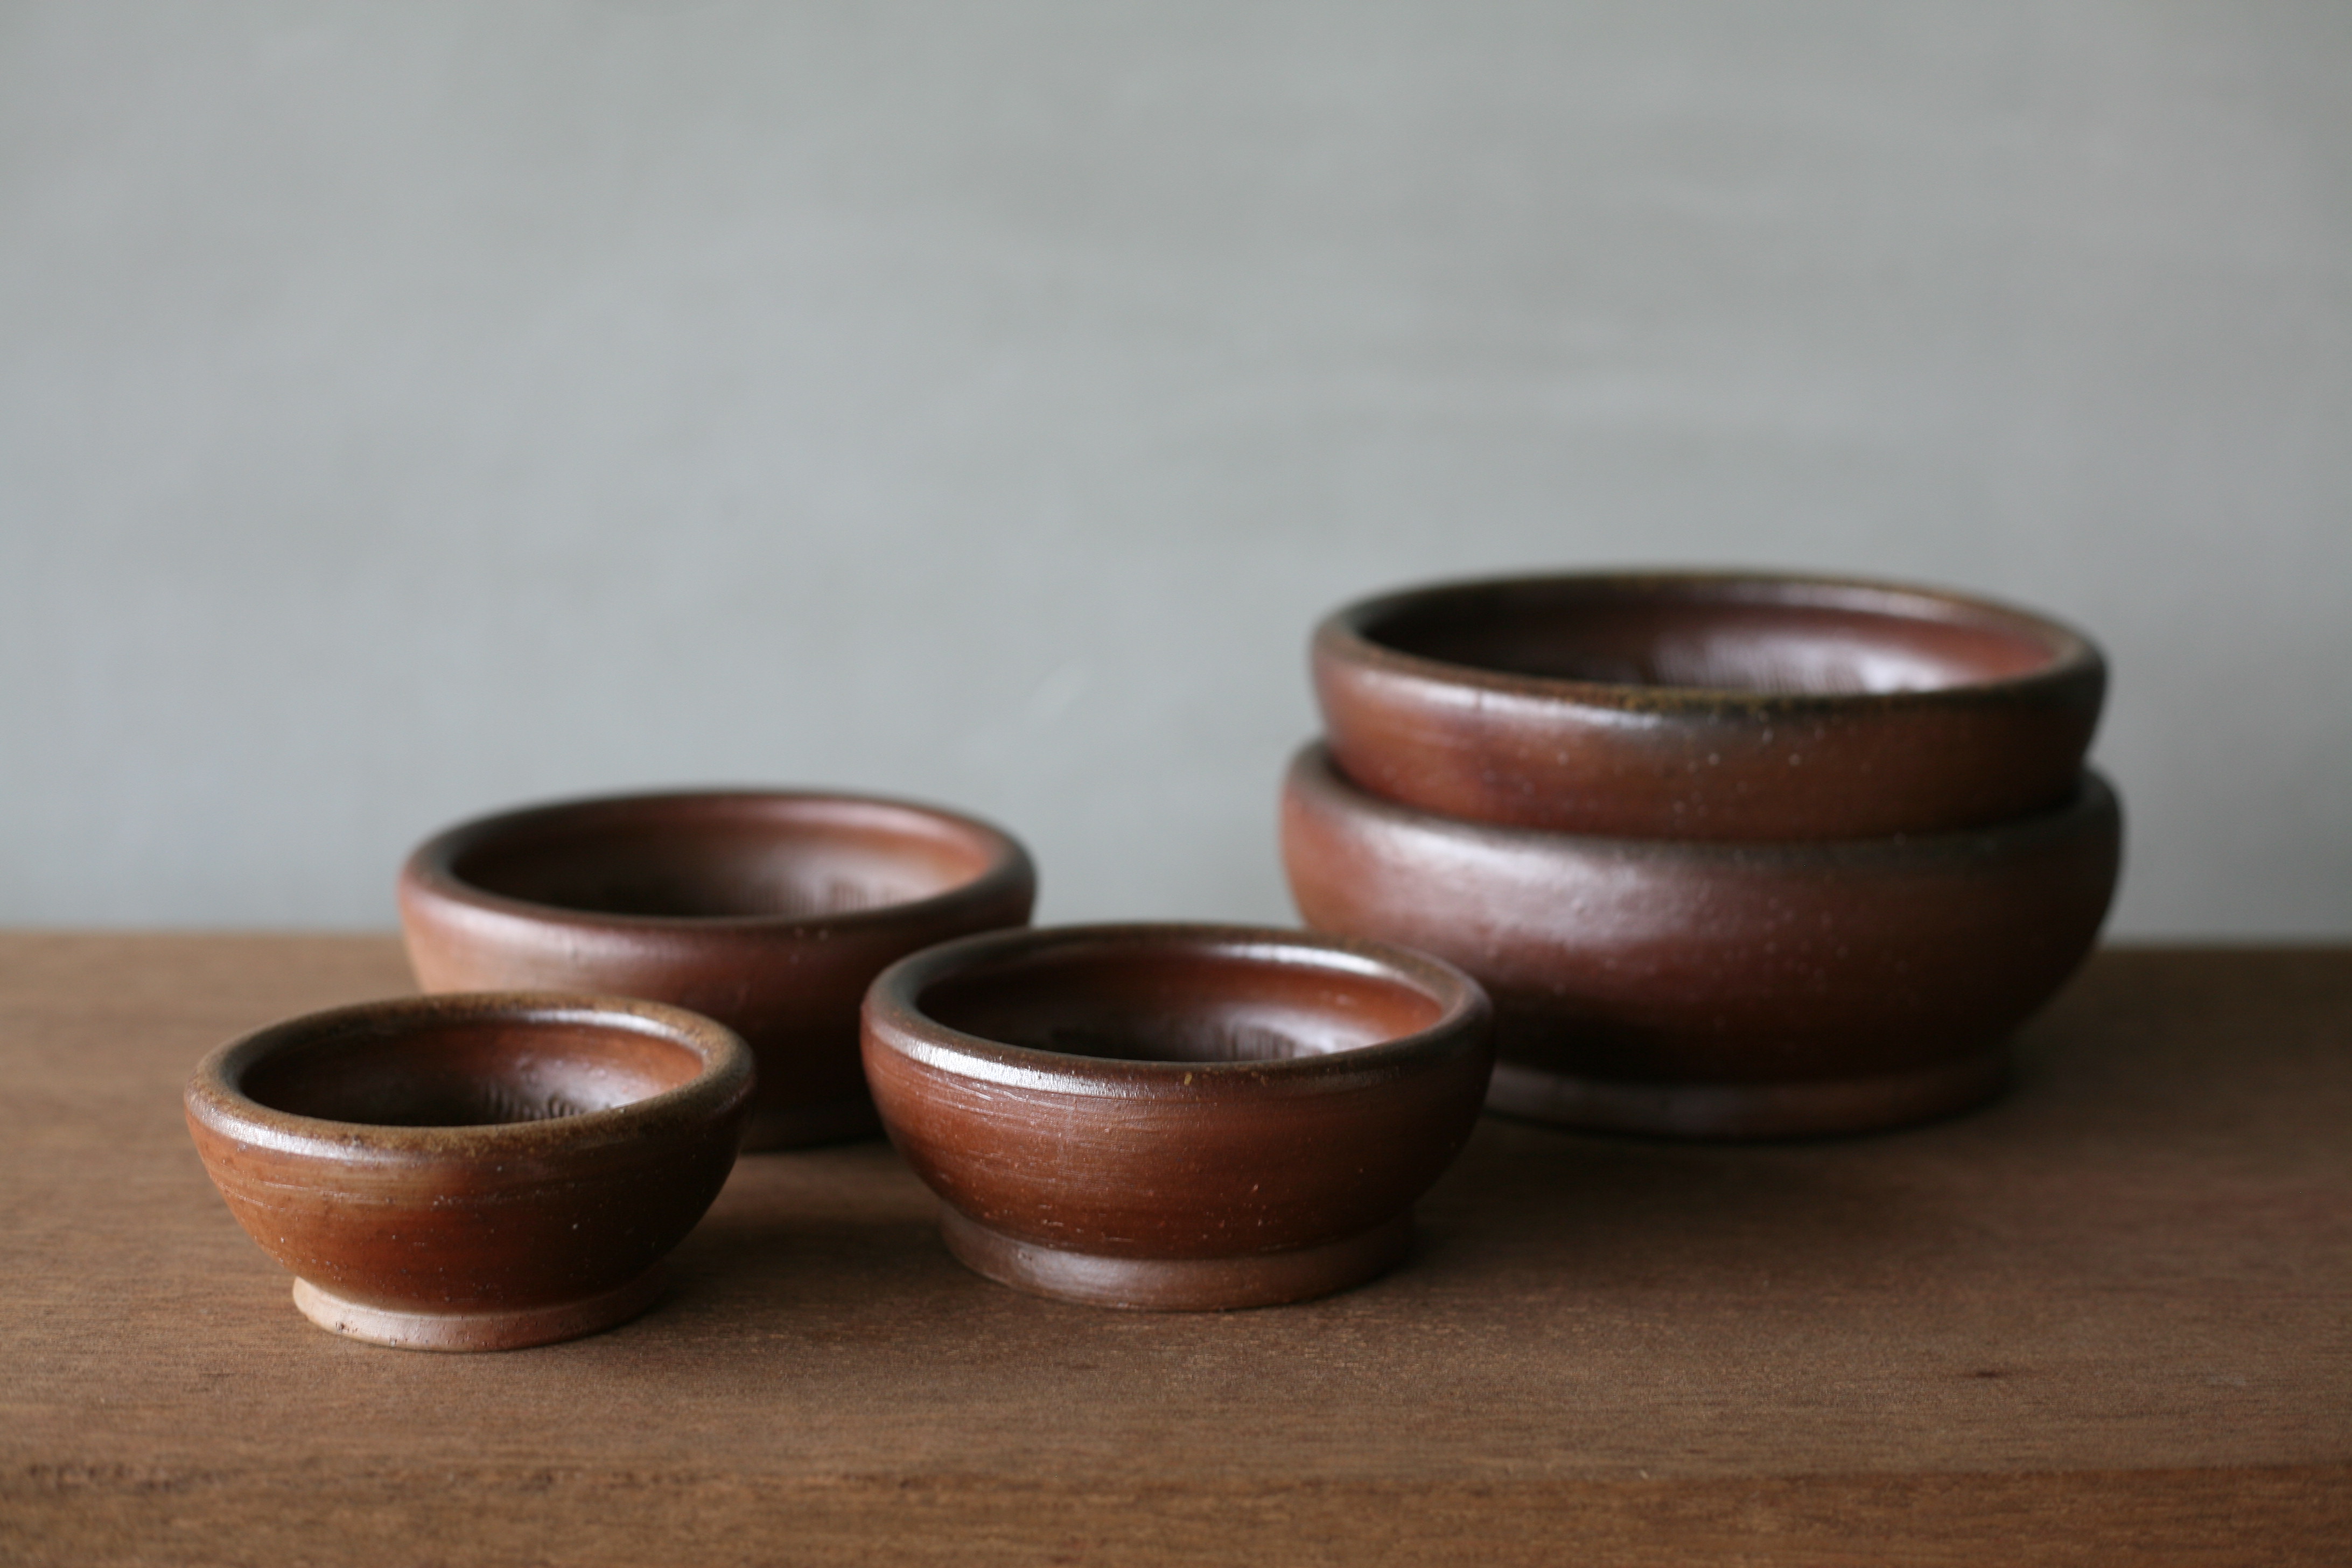 【一陽窯のすり鉢】日本六古窯の一つであり、千年の歴史を持つ備前焼。こちらは昔ながらの素材、製法で作られた備前焼のすり鉢です。 : 職人.comブログ